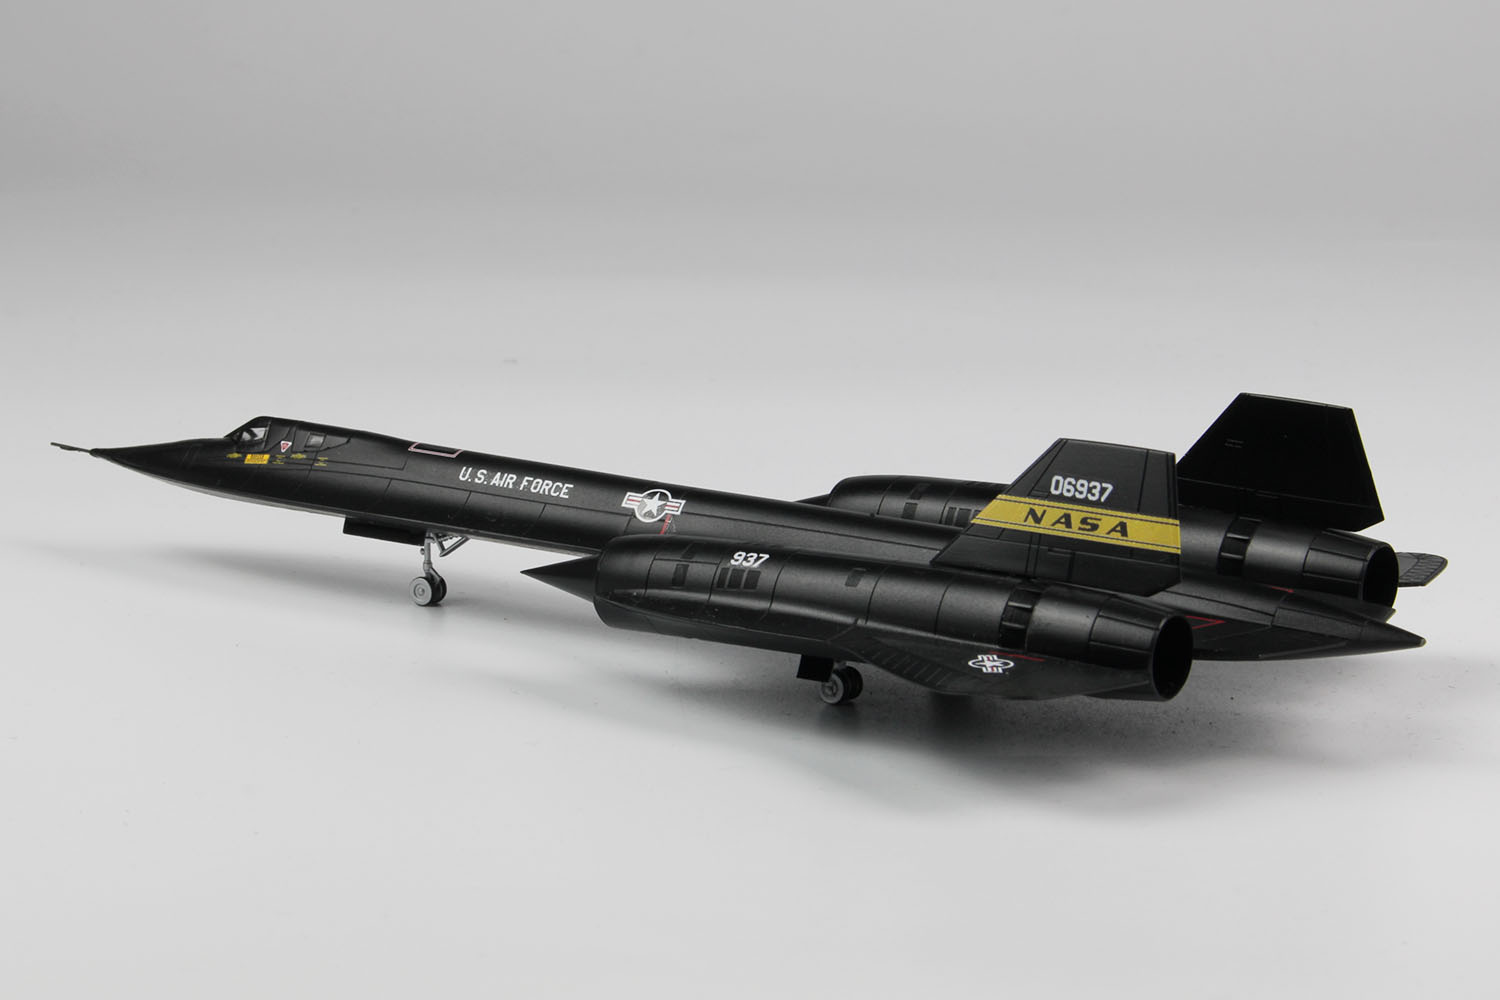 1/144 アメリカ空軍 高高度戦略偵察機 SR-71 ブラックバード 'NASA' - ウインドウを閉じる